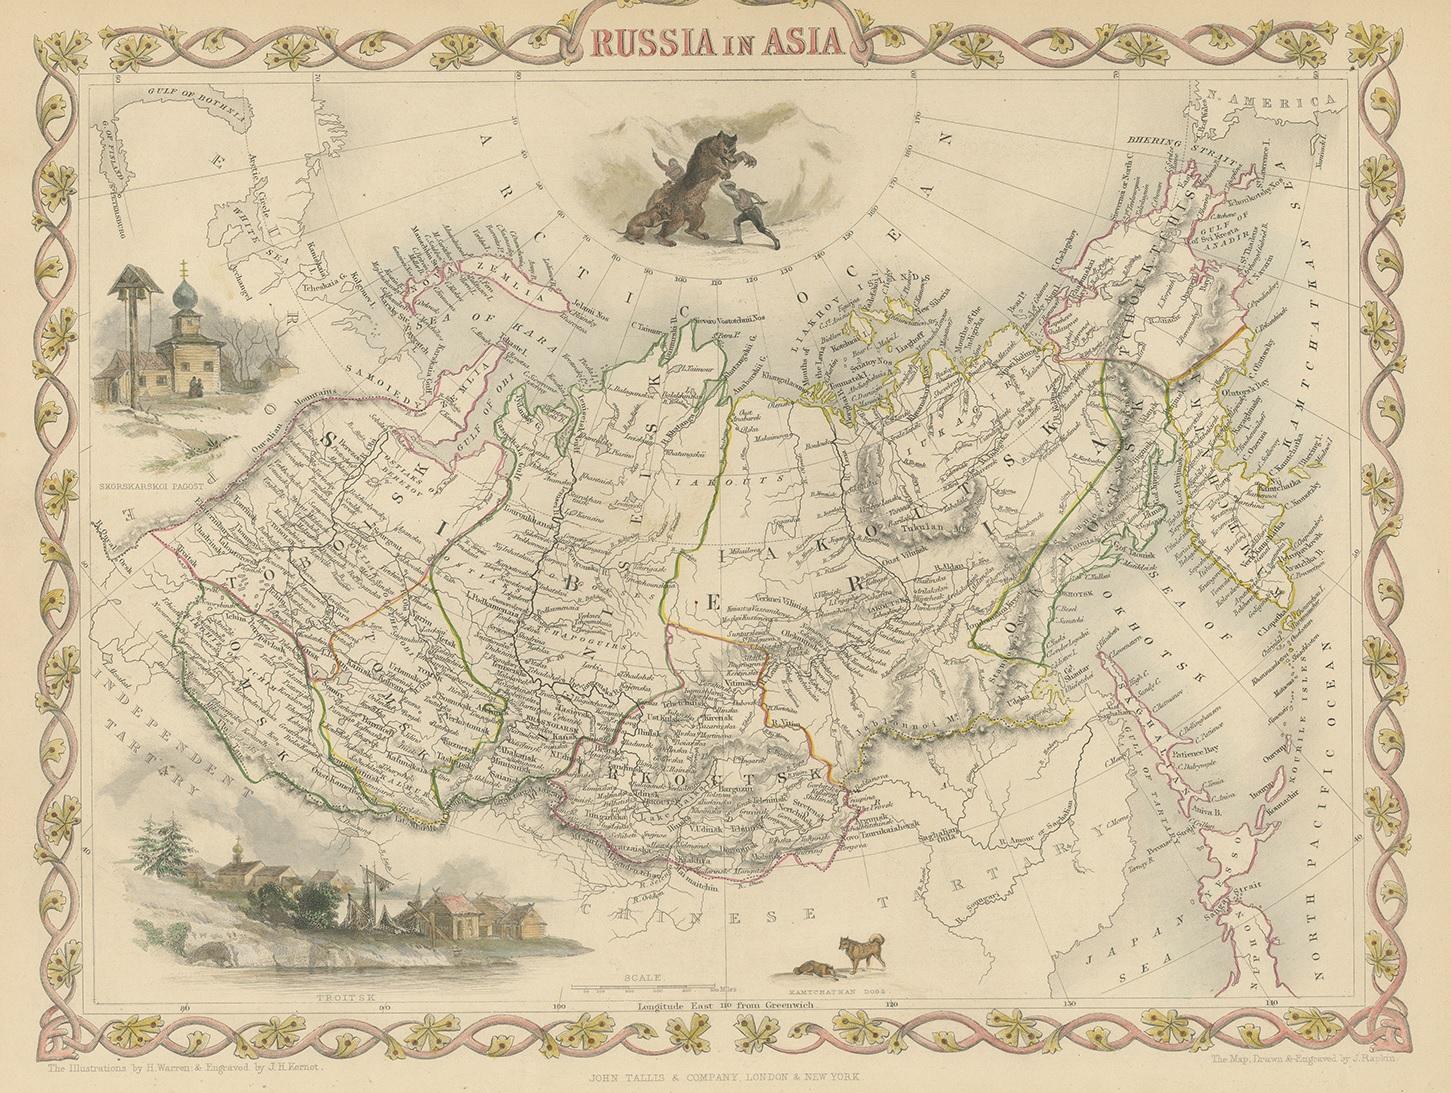 Antike Karte mit dem Titel 'Russland in Asien'. Karte von Russland in Asien. Zeigt Vignetten einer Polarjagdszene, Skorskarskoi Pagost, Troitsk und Kamtschatkan-Hunde. Stammt aus 